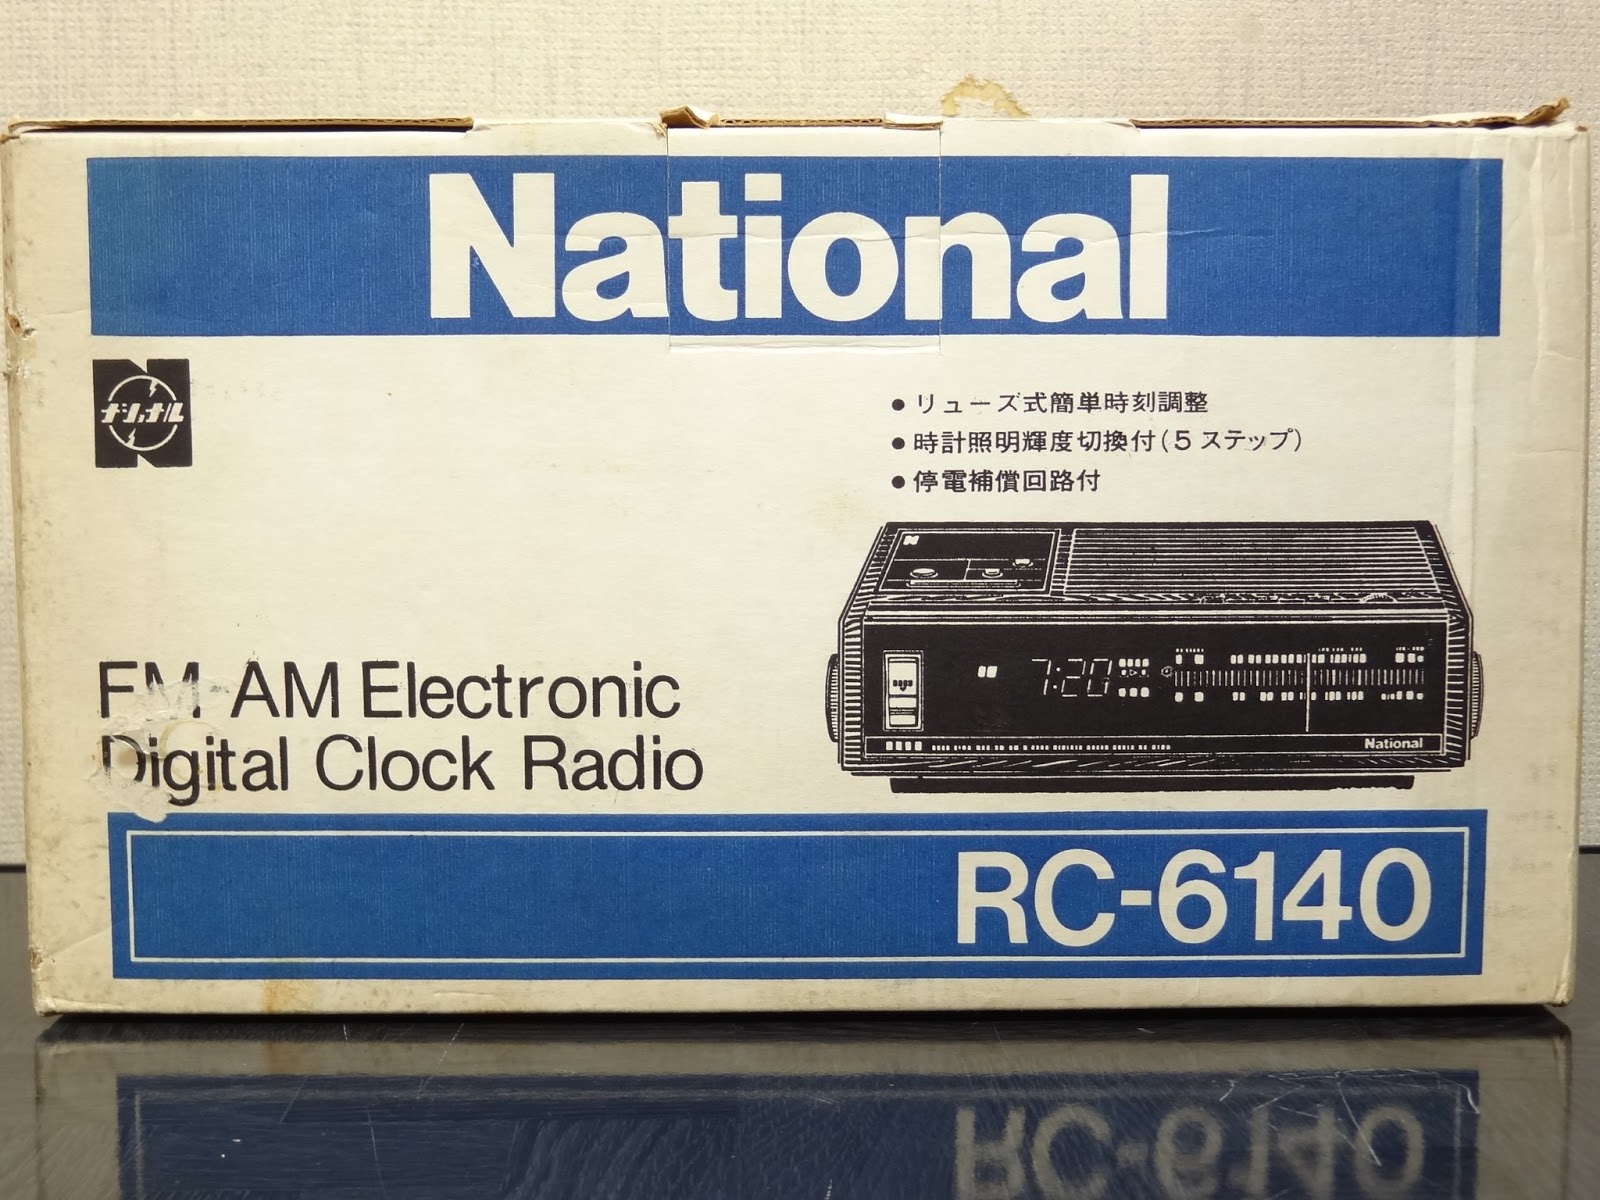 狂乱Nonaha日記: National クロックラジオ RC-6140